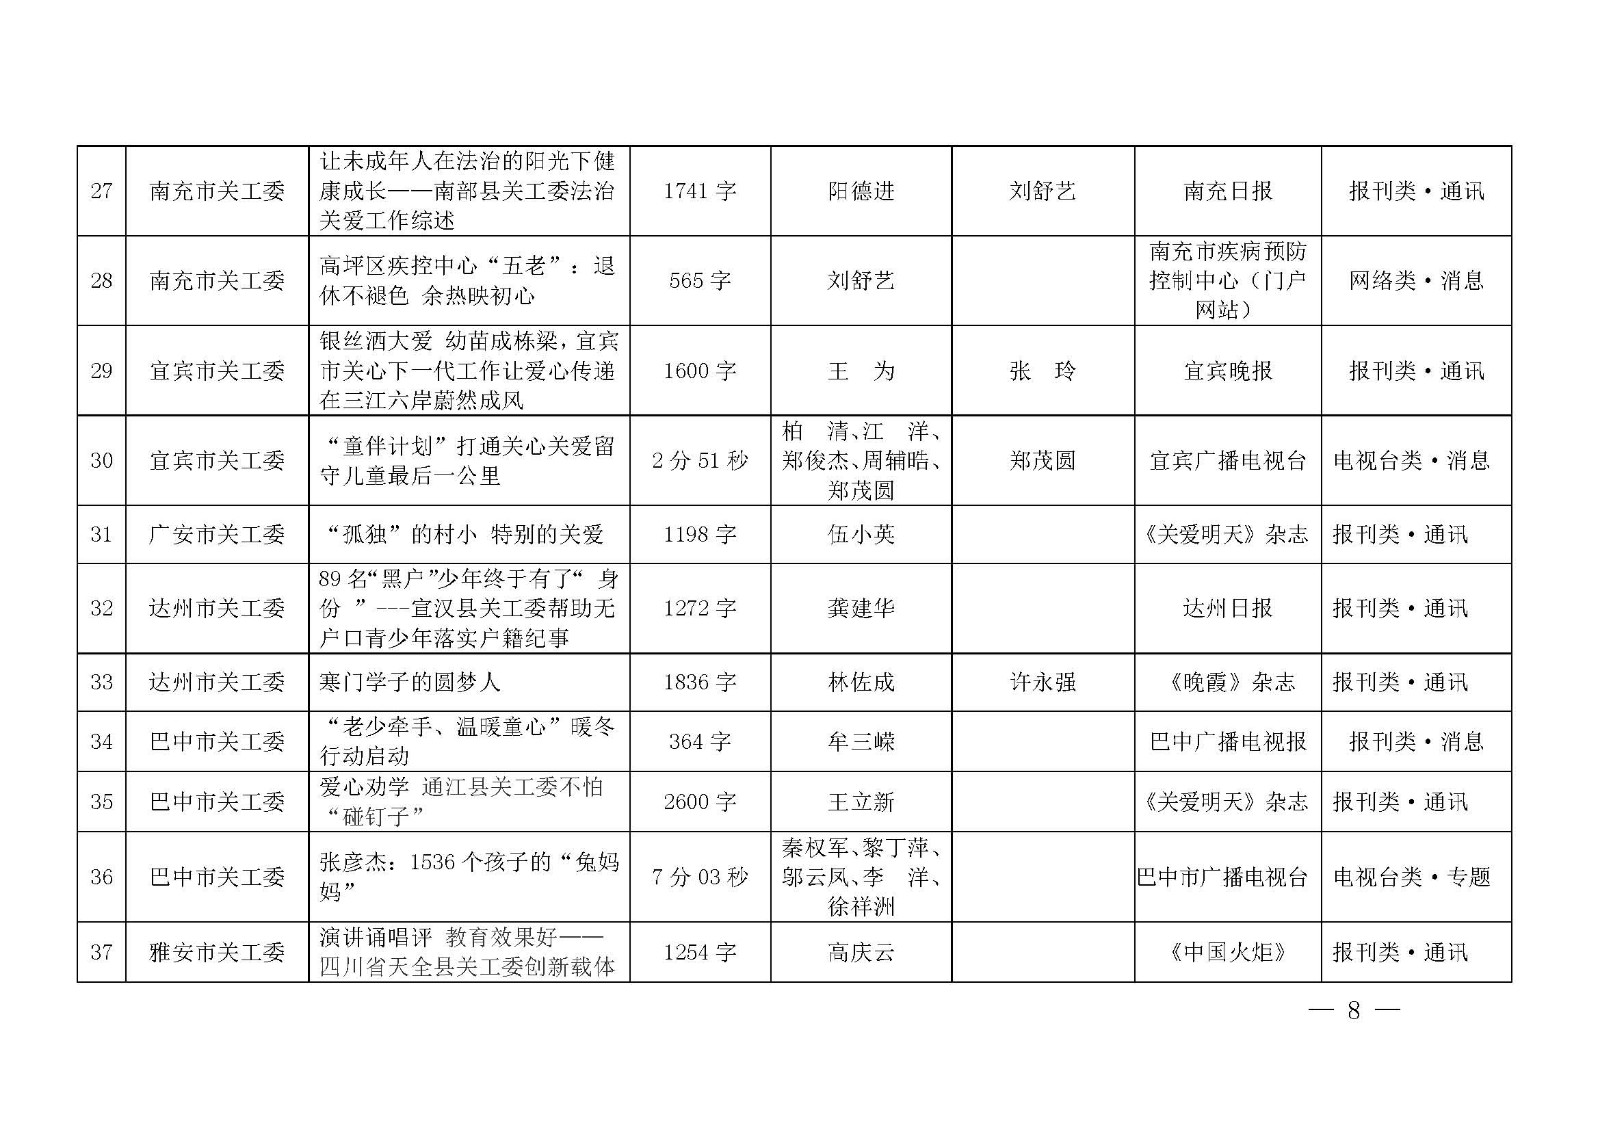 第七届四川宣传关心下一代新闻佳作获奖名单公示_页面_08.jpg